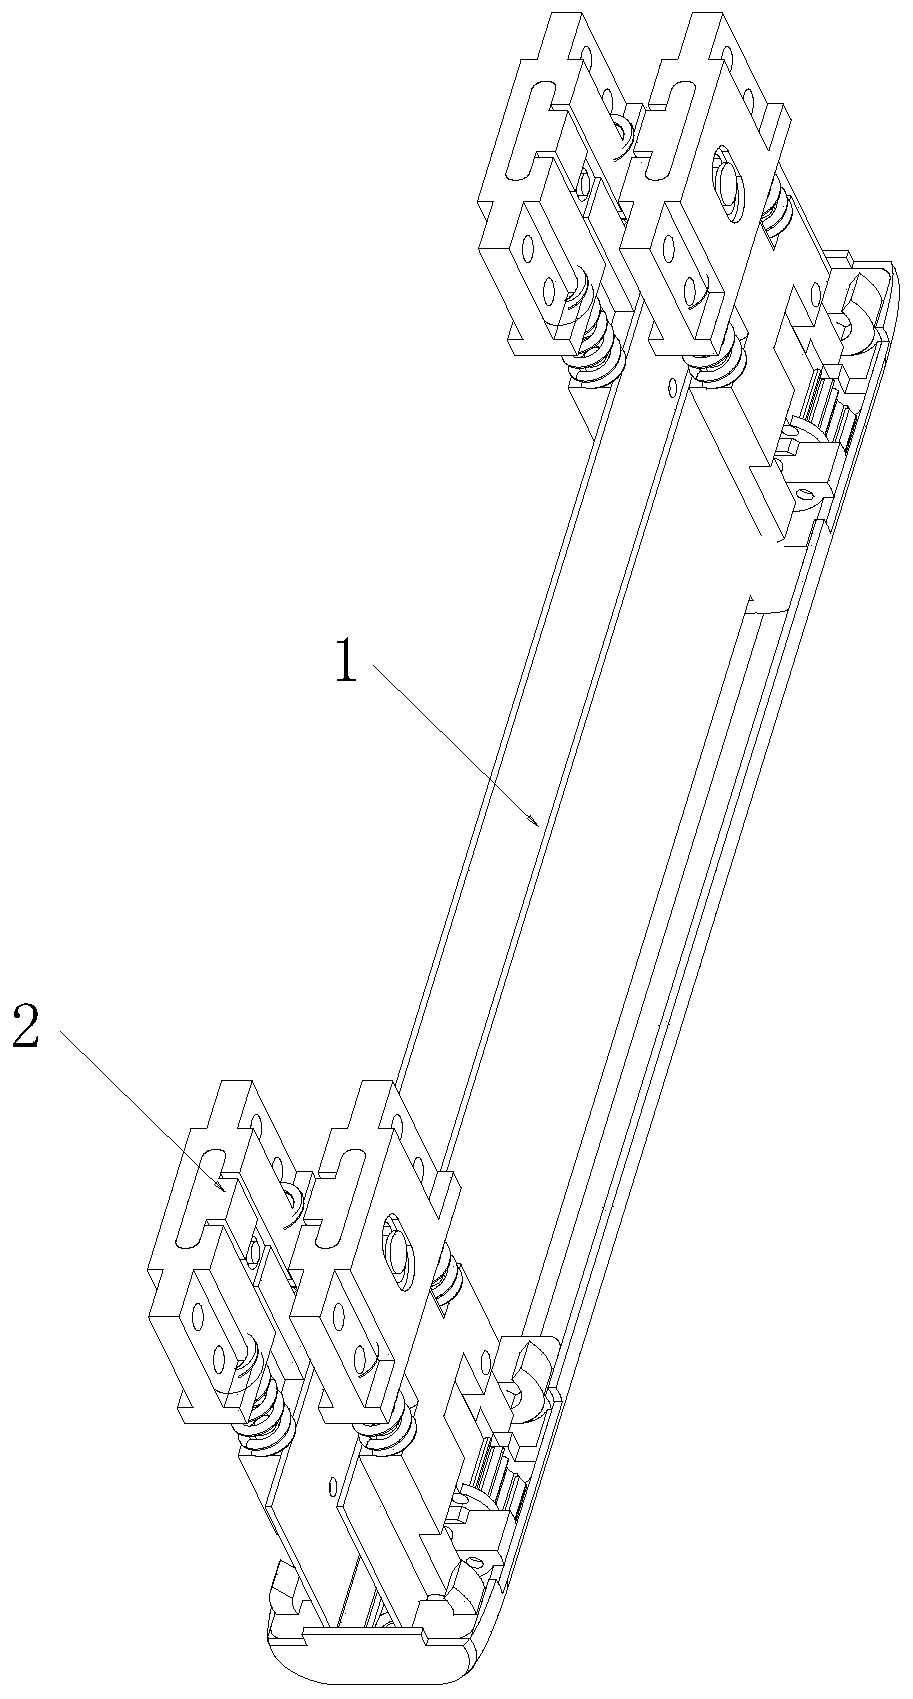 Wedge-shaped inward folding synchronous rotating mechanism